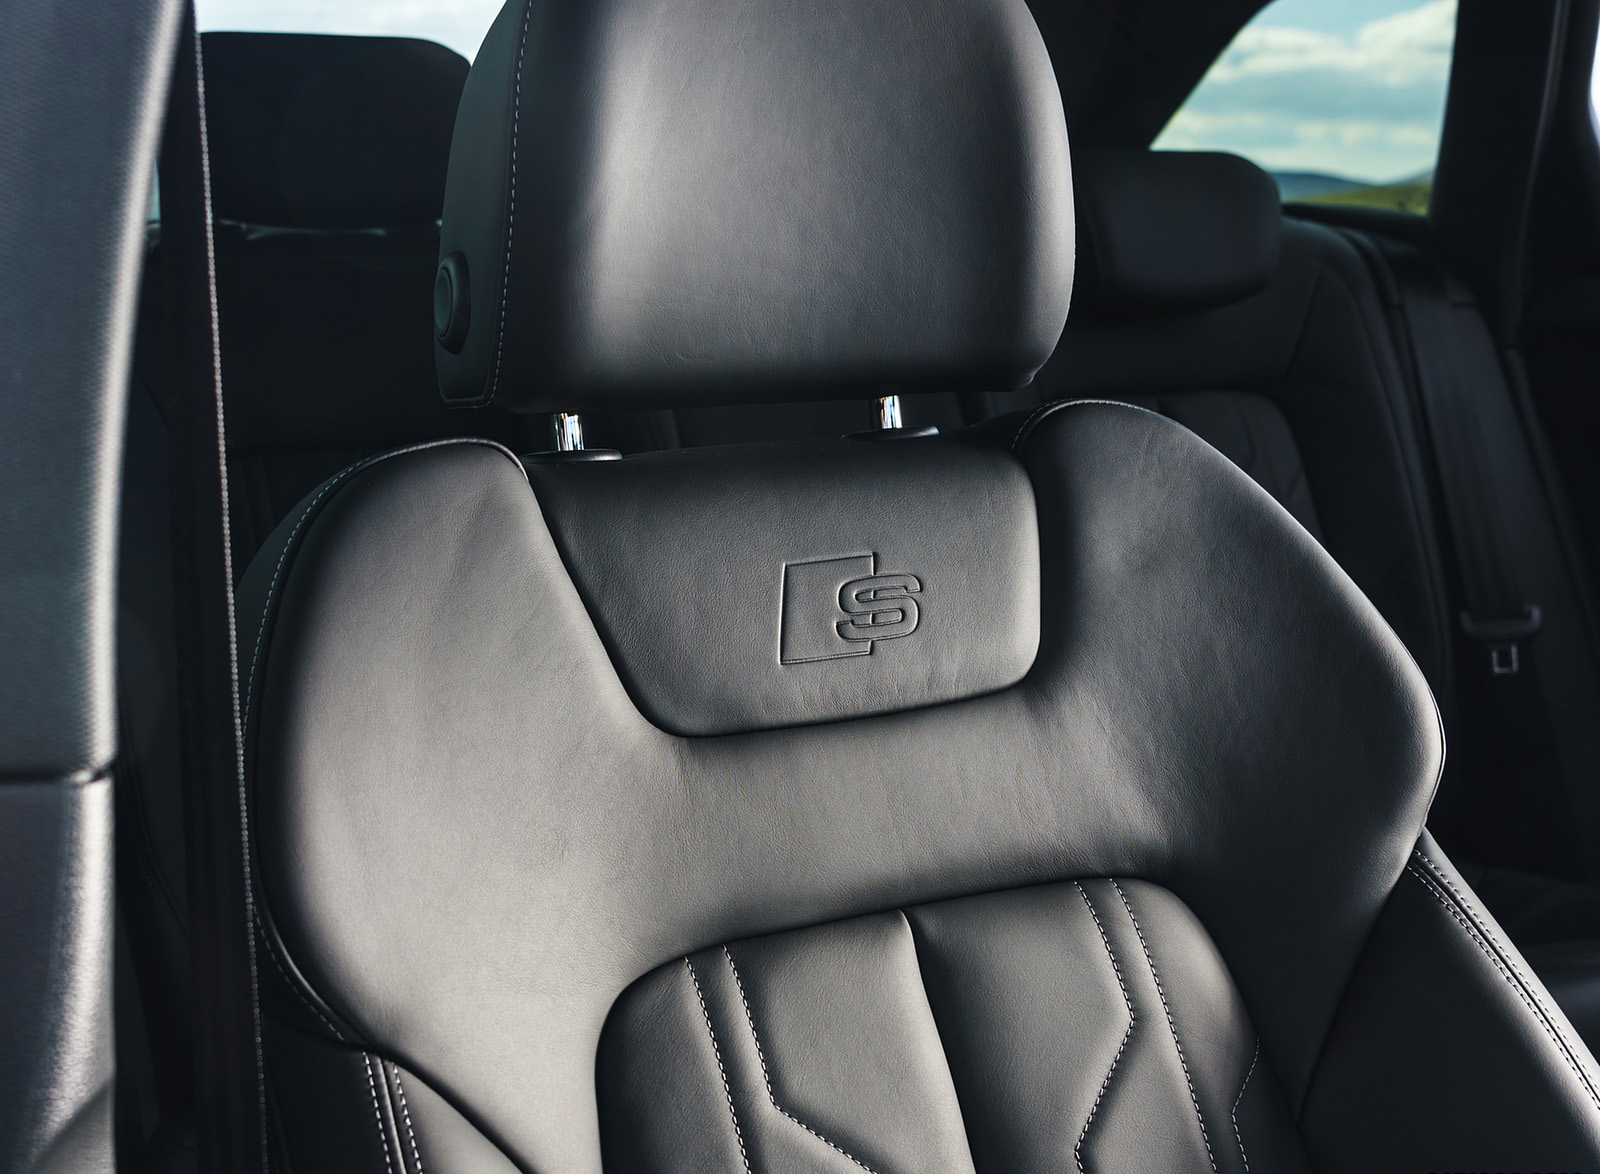 2019 Audi A6 Avant 50 TDI Quattro (UK-Spec) Interior Front Seats Wallpapers #59 of 62